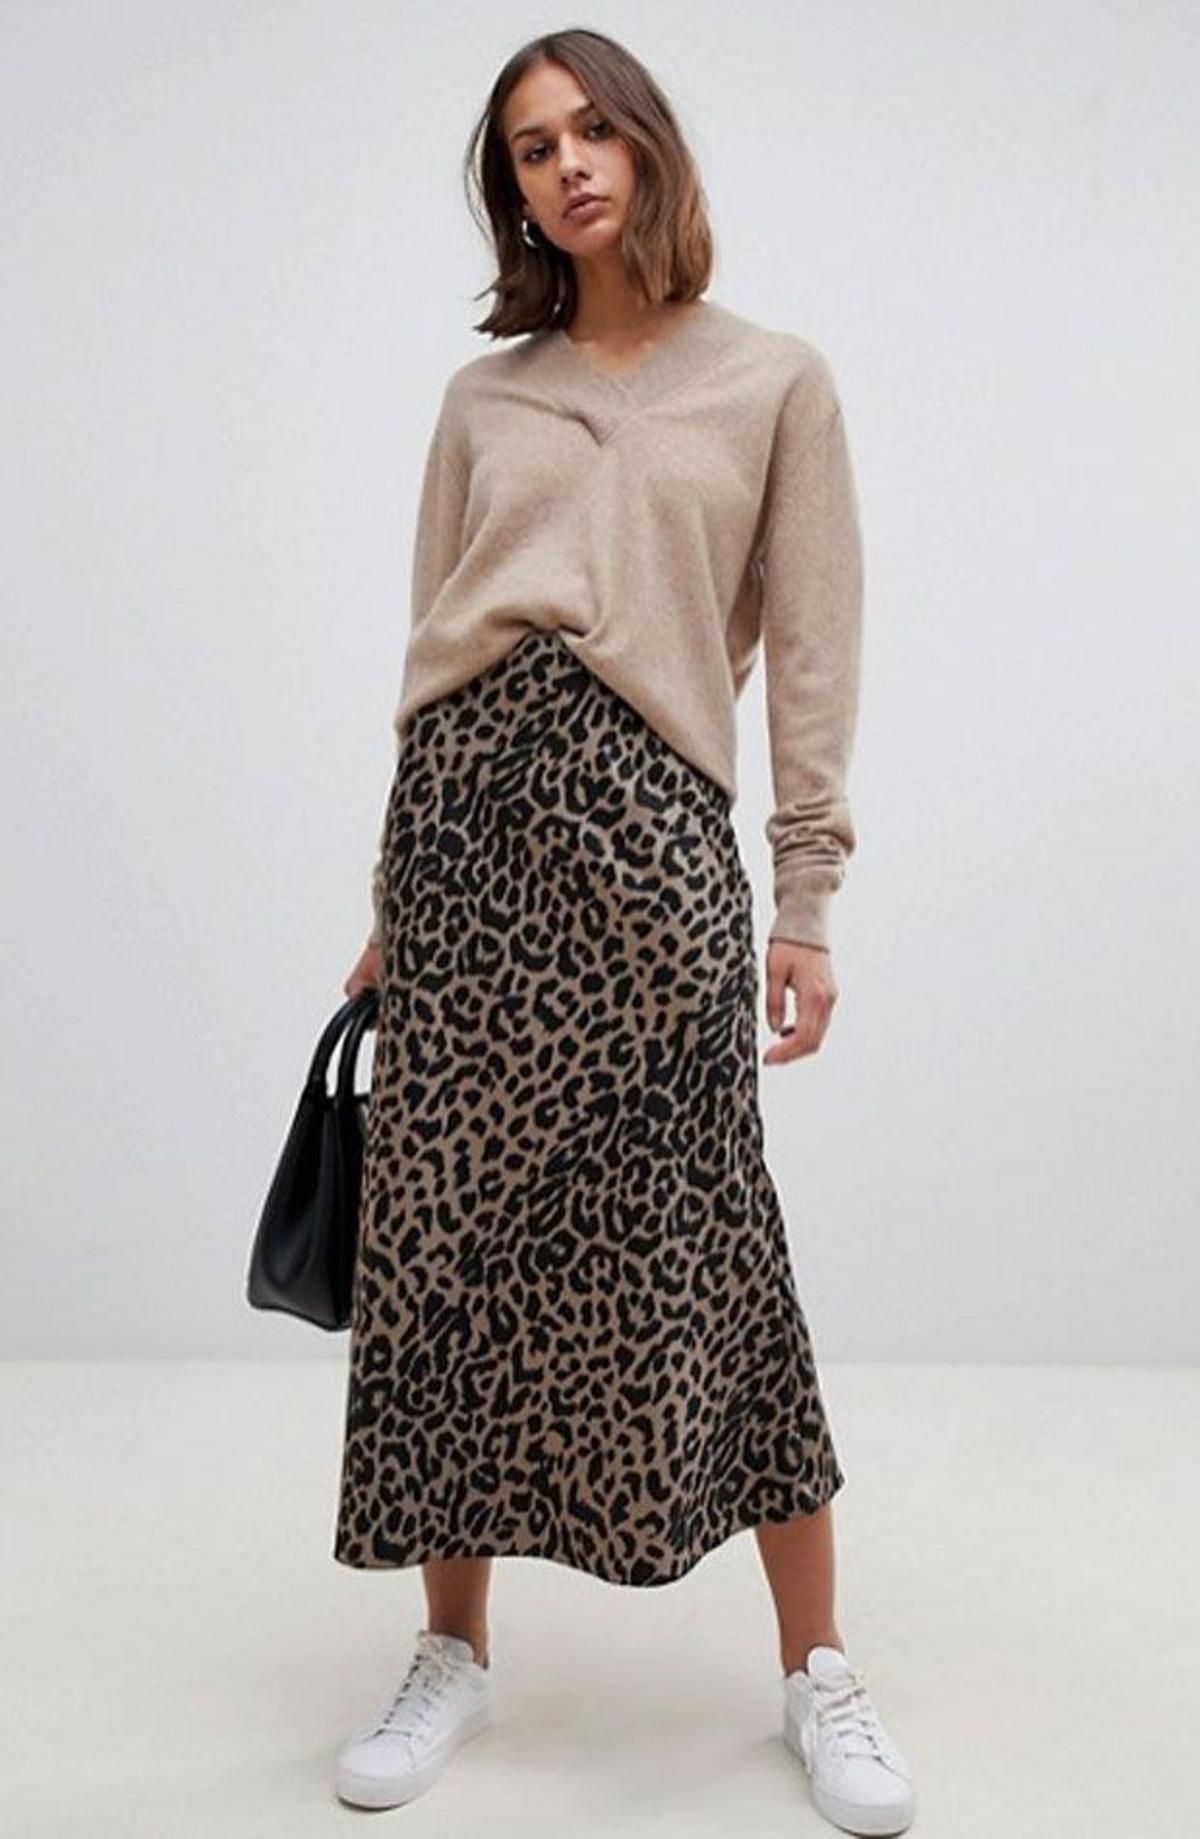 Beca familia Medio Zara, H&M y Asos tienen la falda más deseada de la temporada - Woman